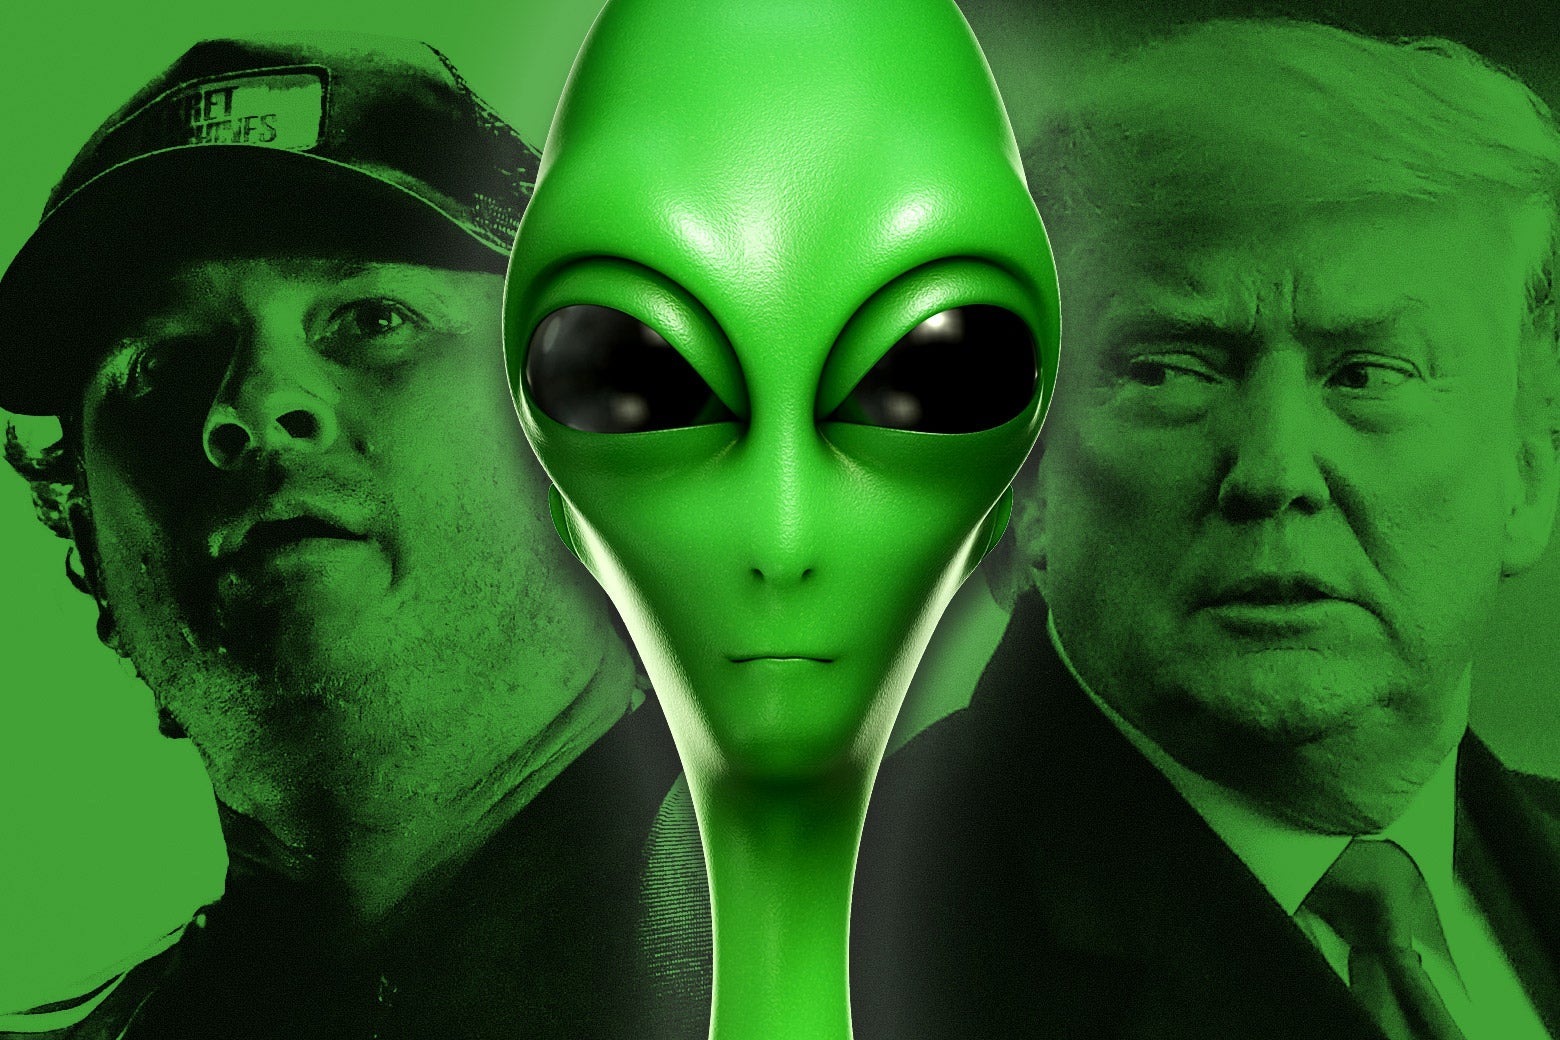 Tom DeLonge, a green alien, and Donald Trump.